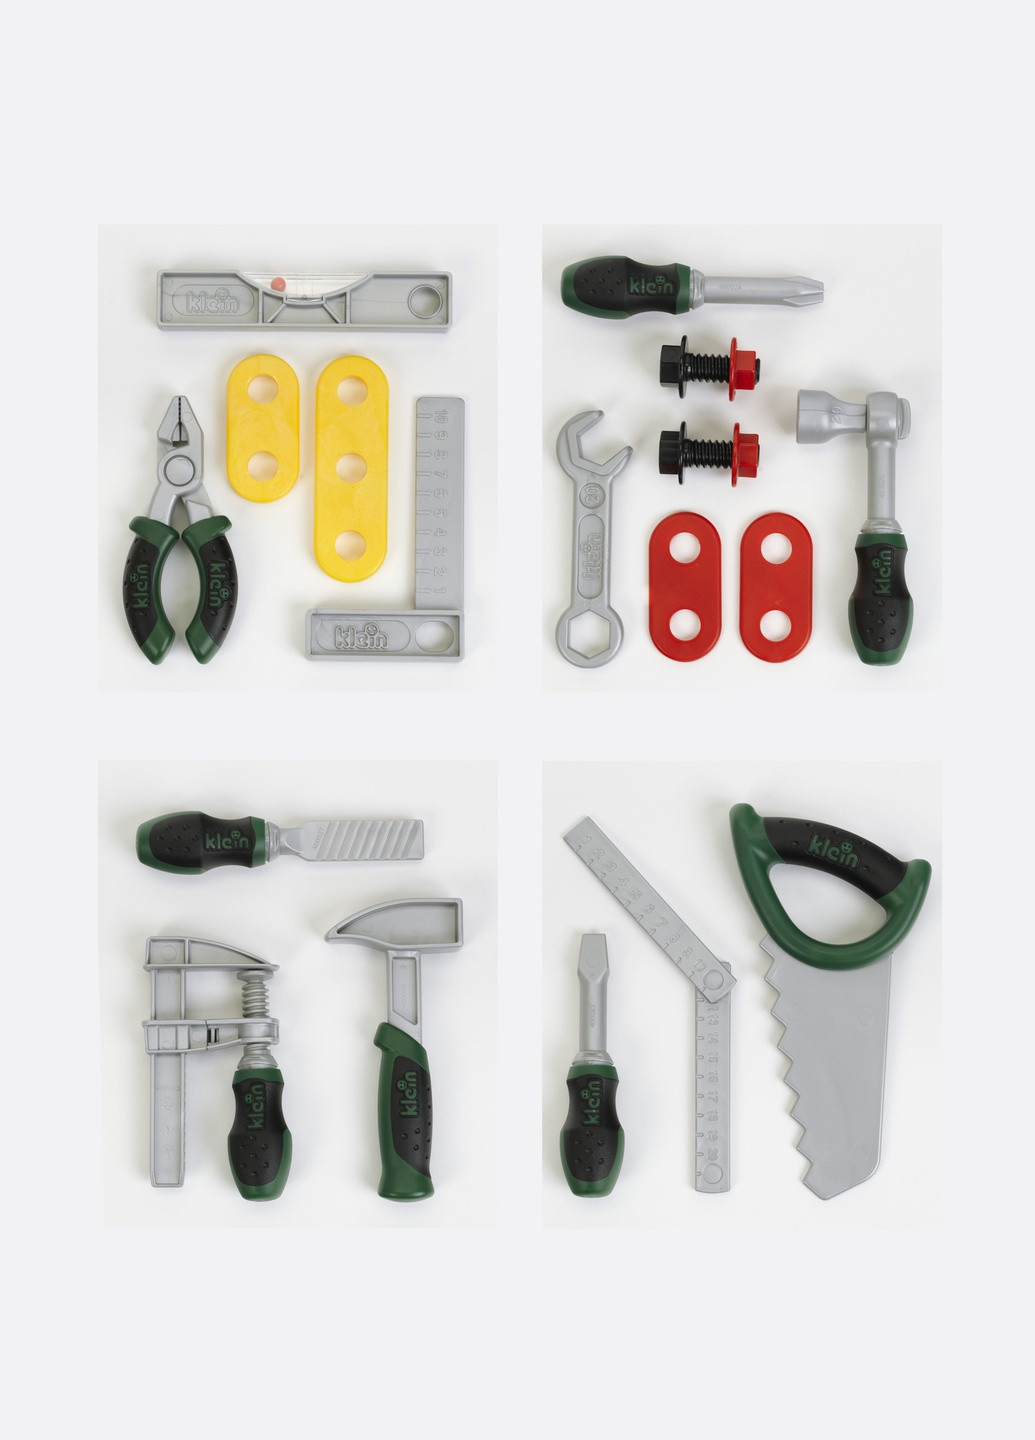 Игрушечный набор инструментов Klein 1 из 4х секций 8007B (9054) Bosch (263434518)